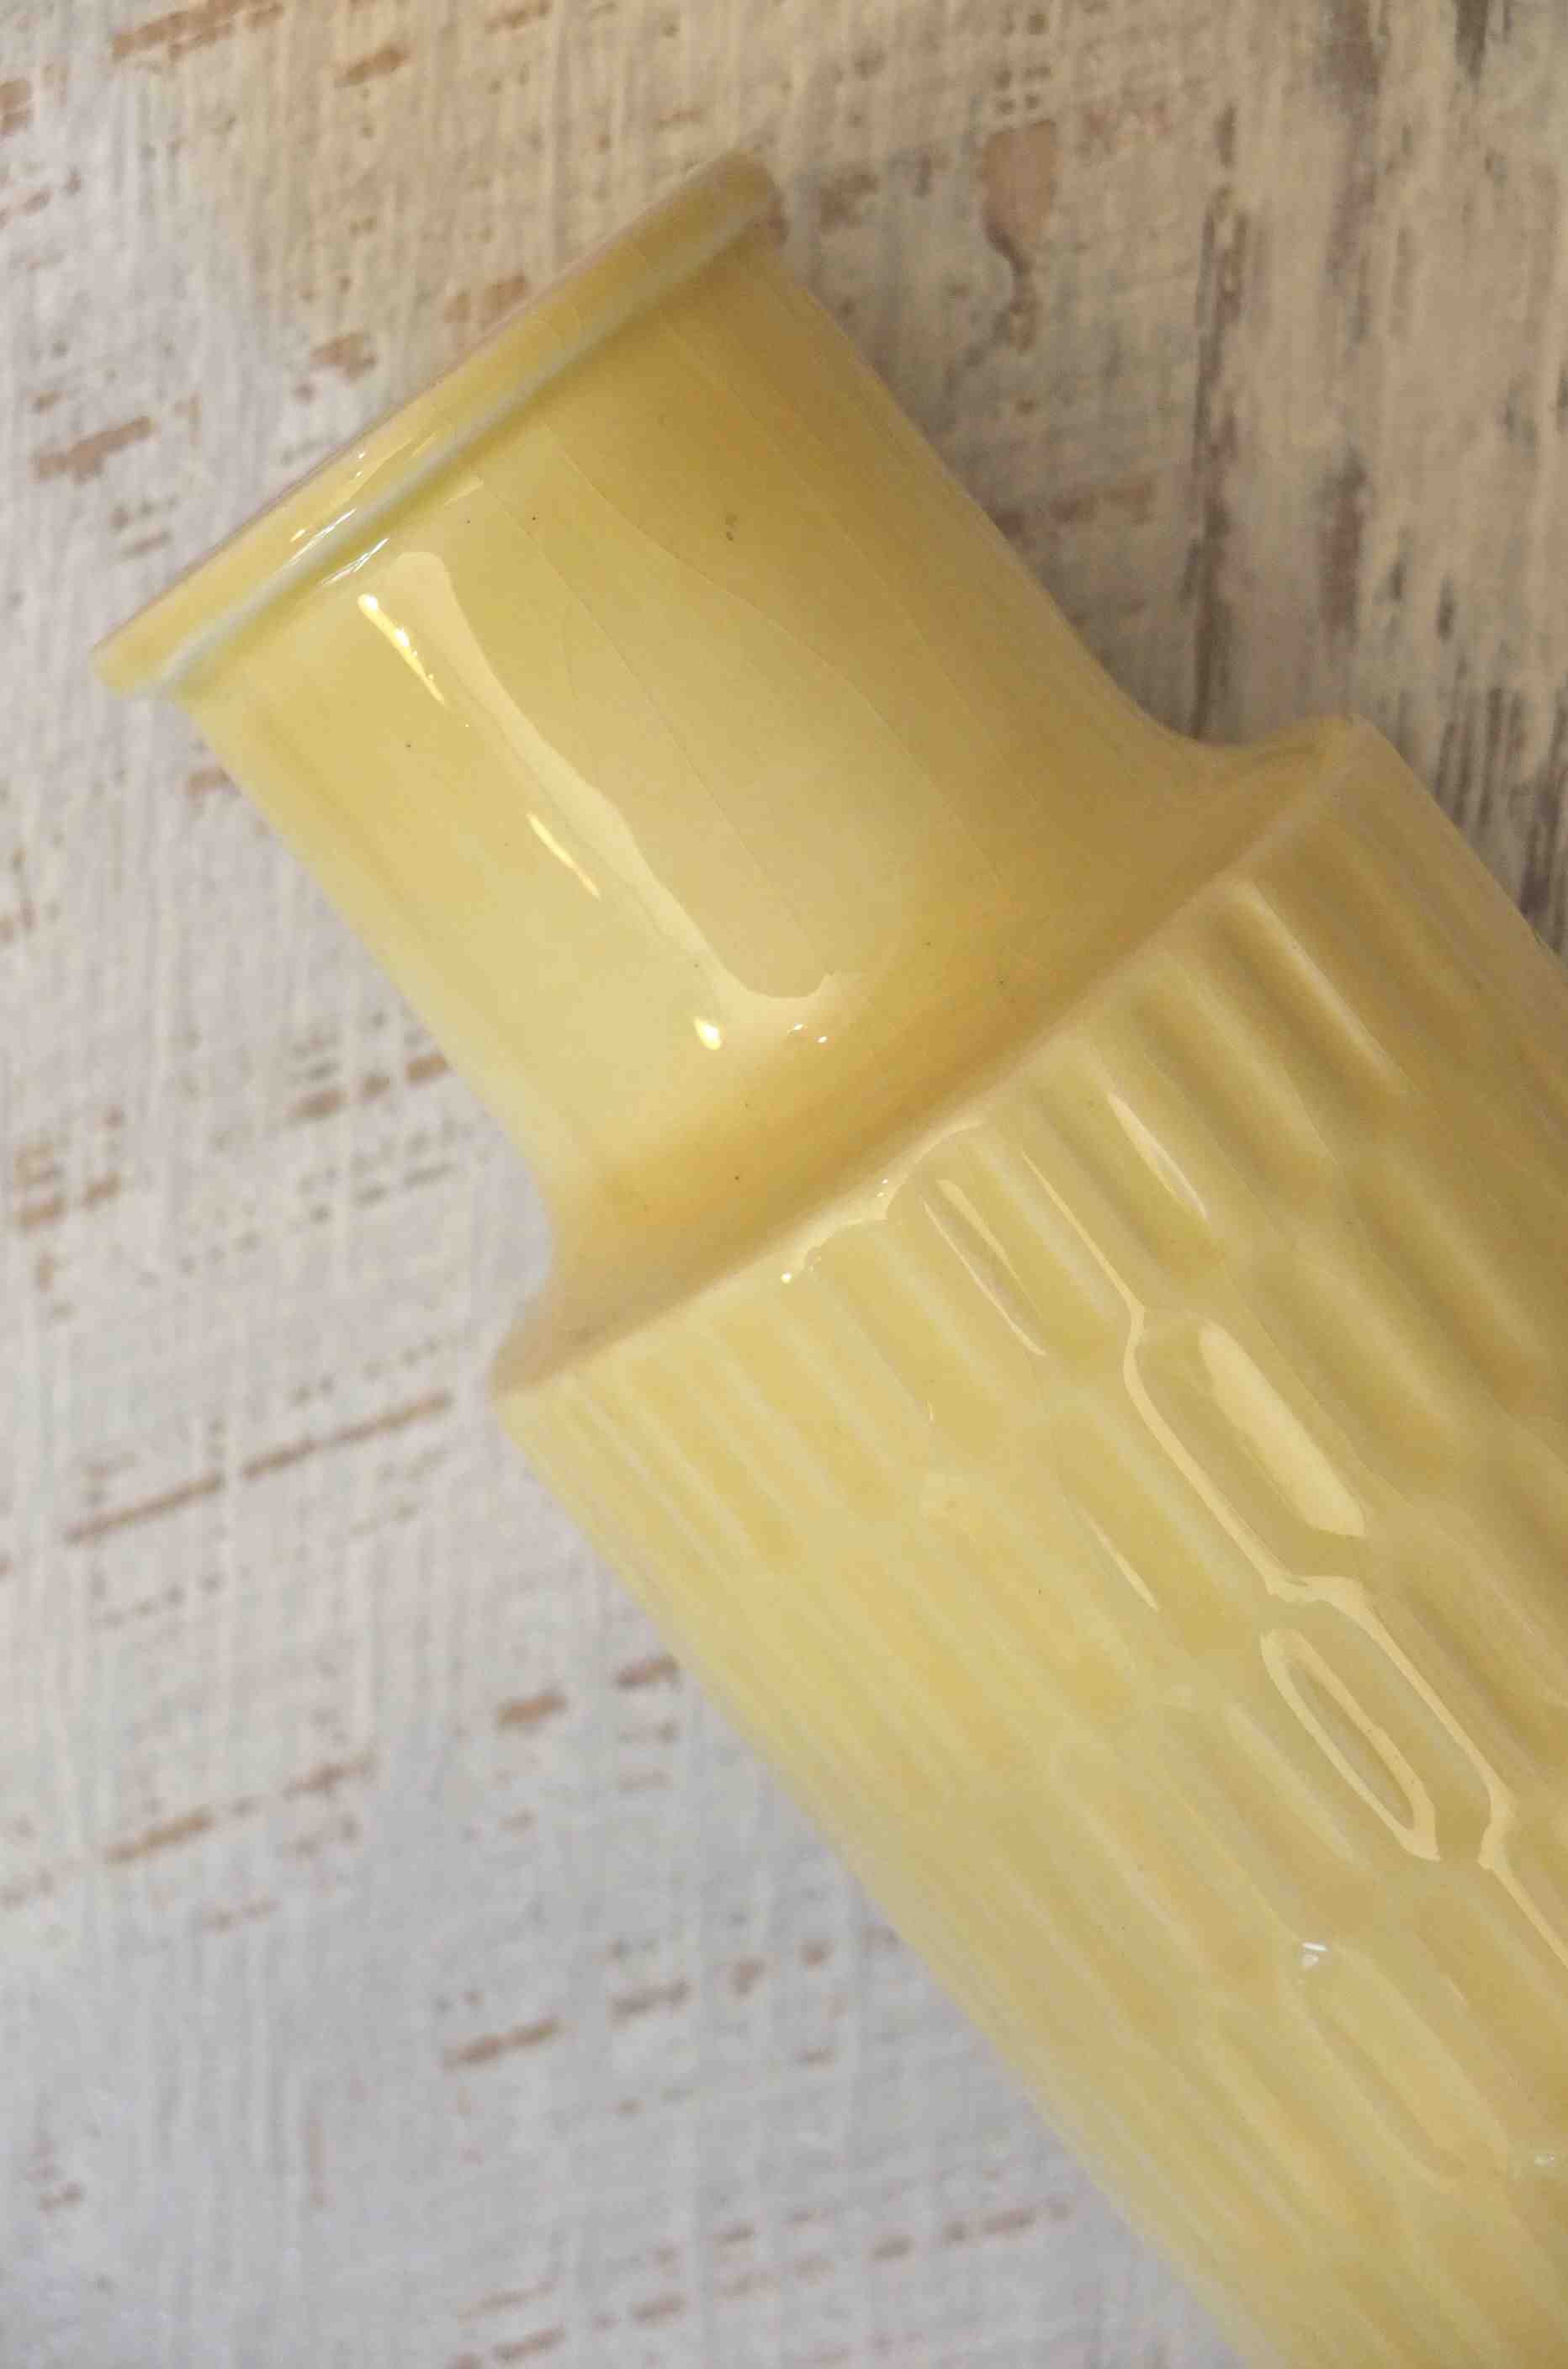 Slavia Vintage vase en porcelaine des annees 60 tchecoslovaque "Vanilla" detail motifs fantaisie